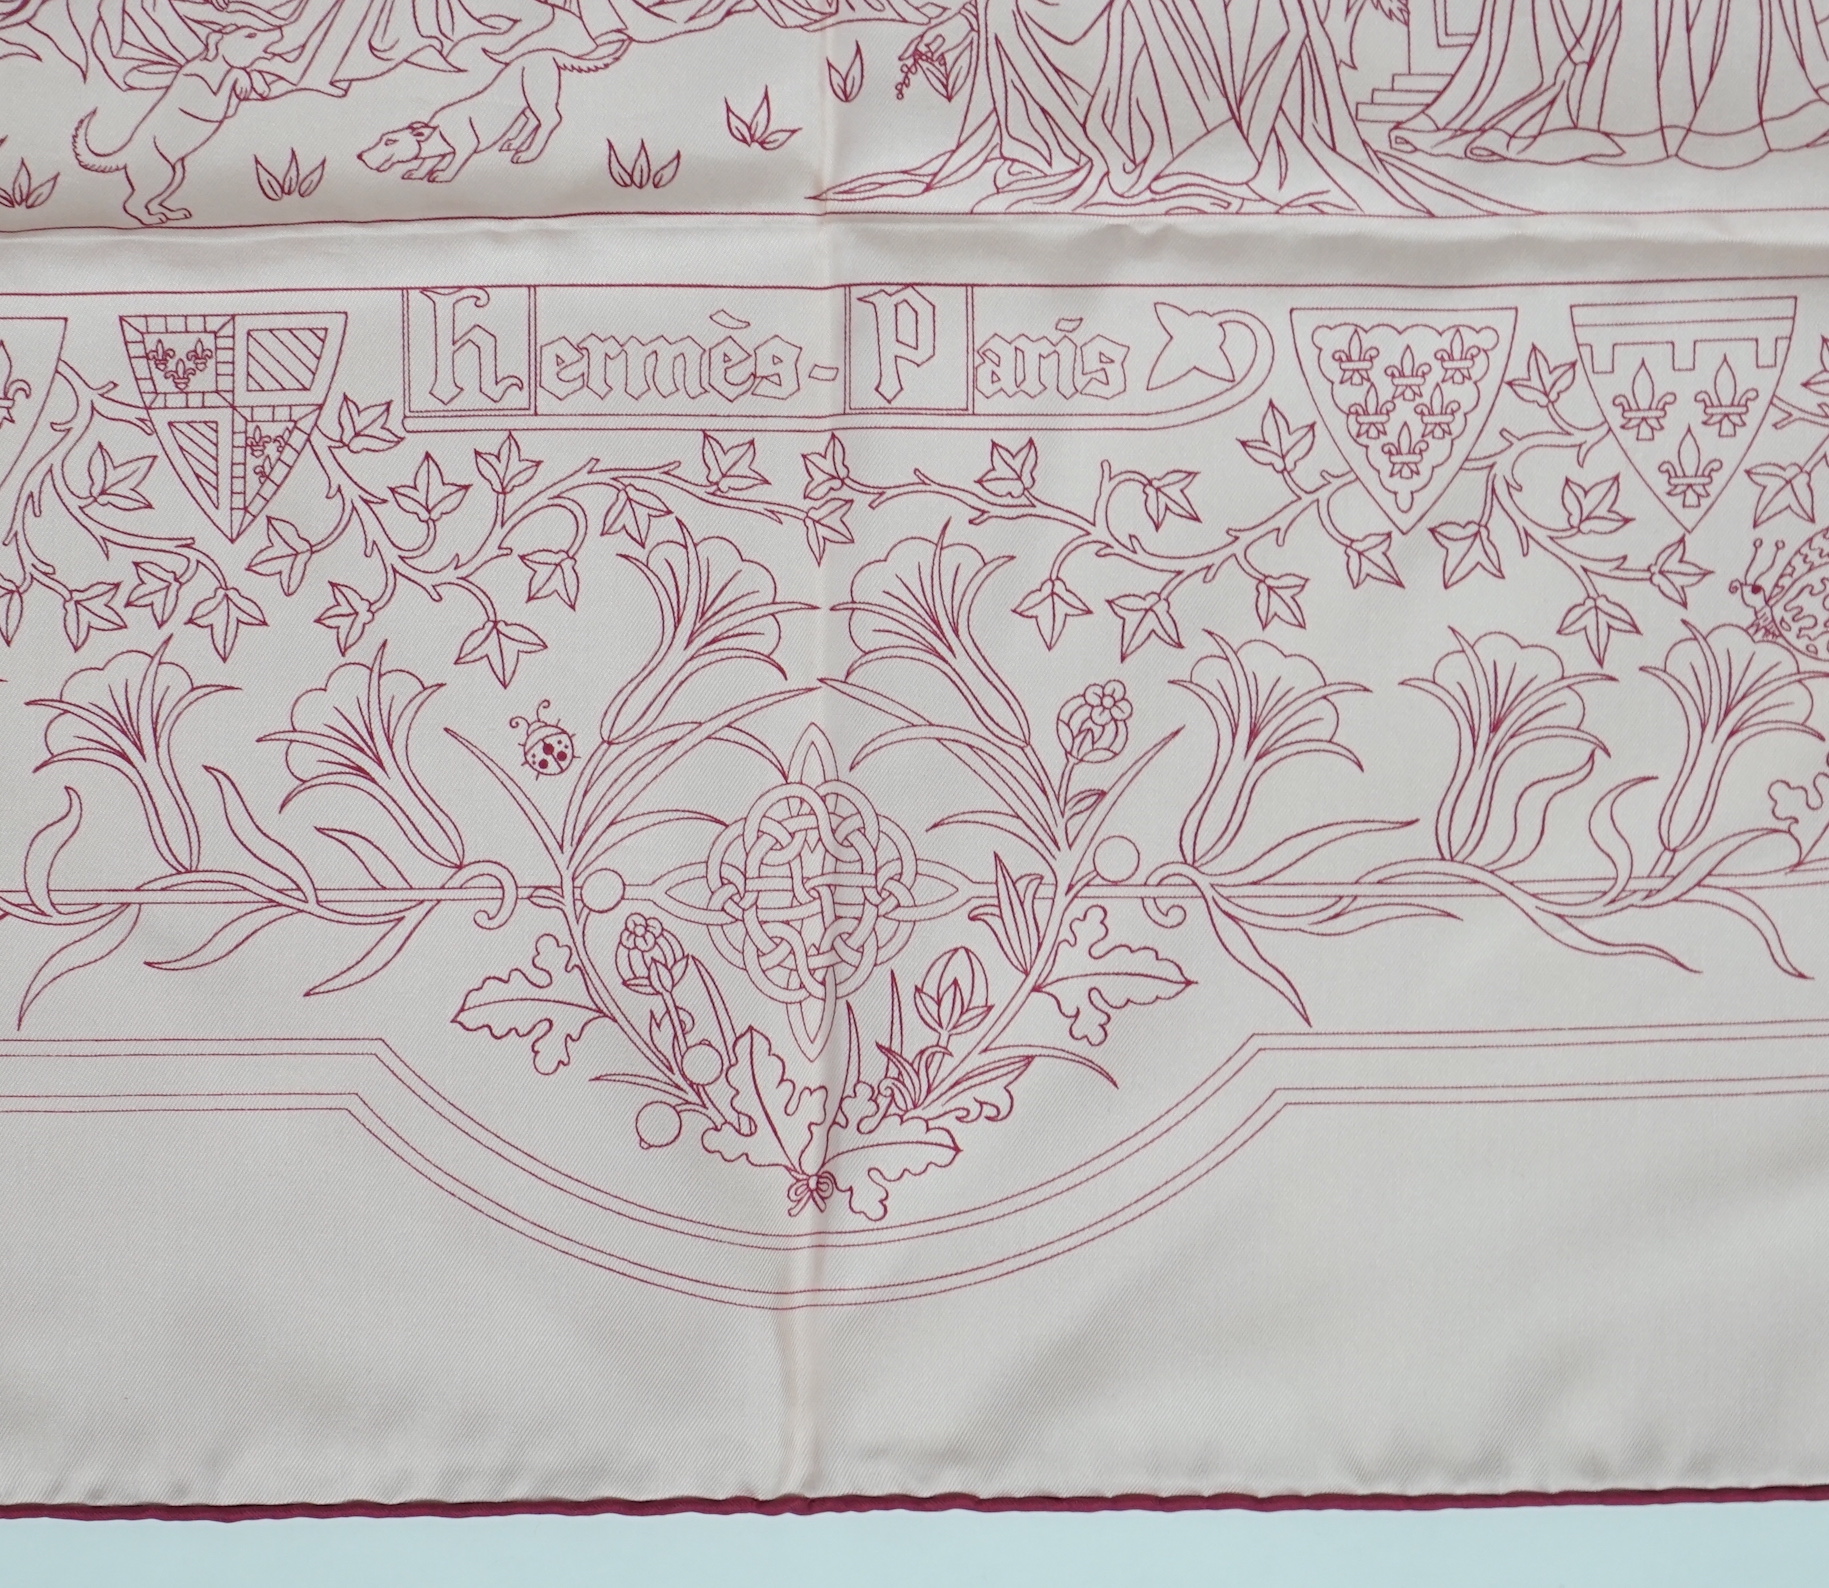 A Hermès Cavalcade de Mai printed light pink silk scarf, 90cm x 90cm